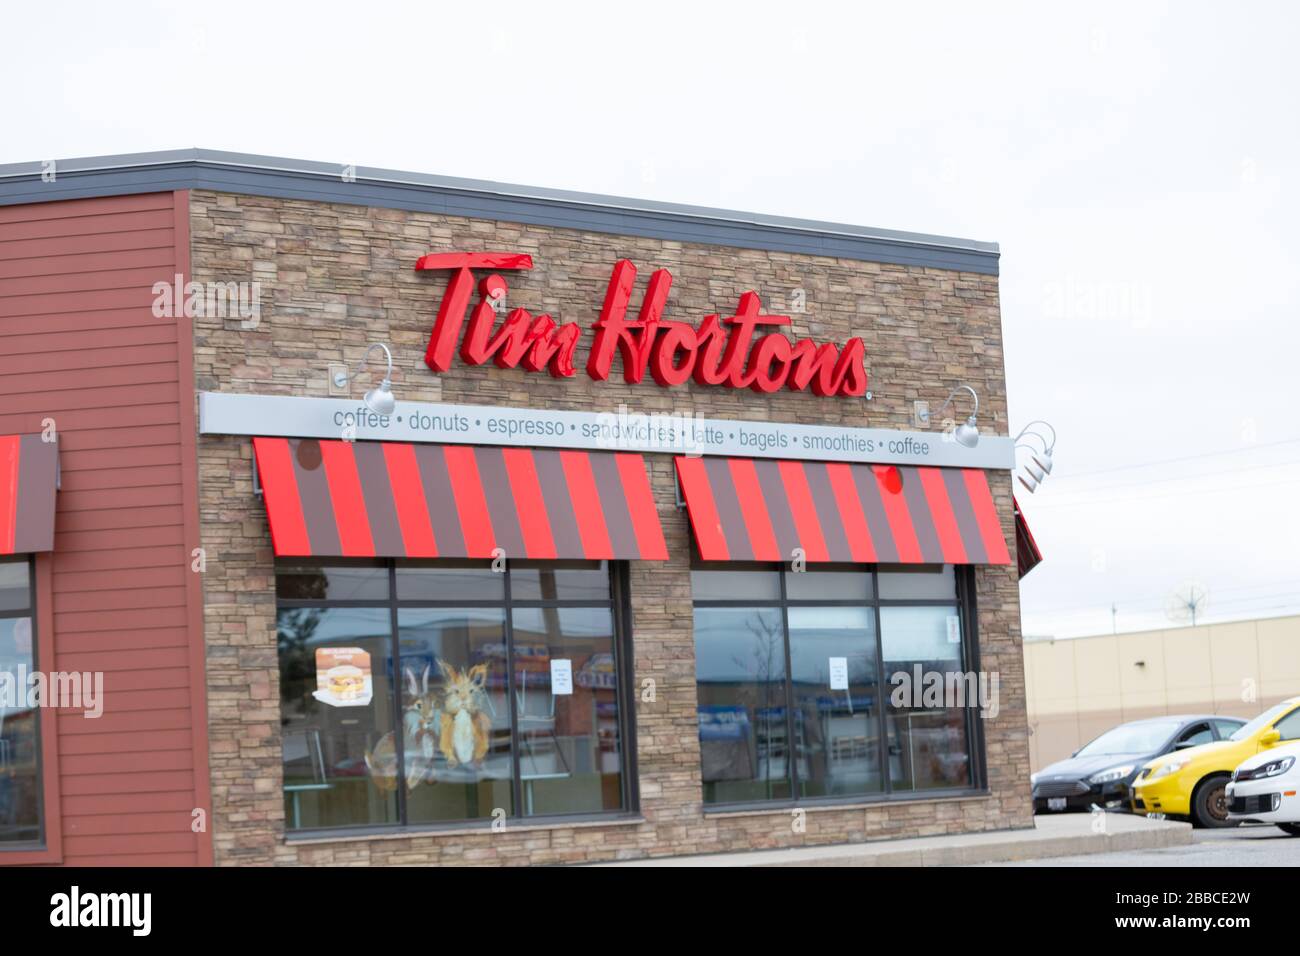 Cerca de un cartel que muestra el edificio del restaurante de comida rápida Tim Hortons. Tim Hortons es la cadena de restaurantes más grande de Canadá. Foto de stock